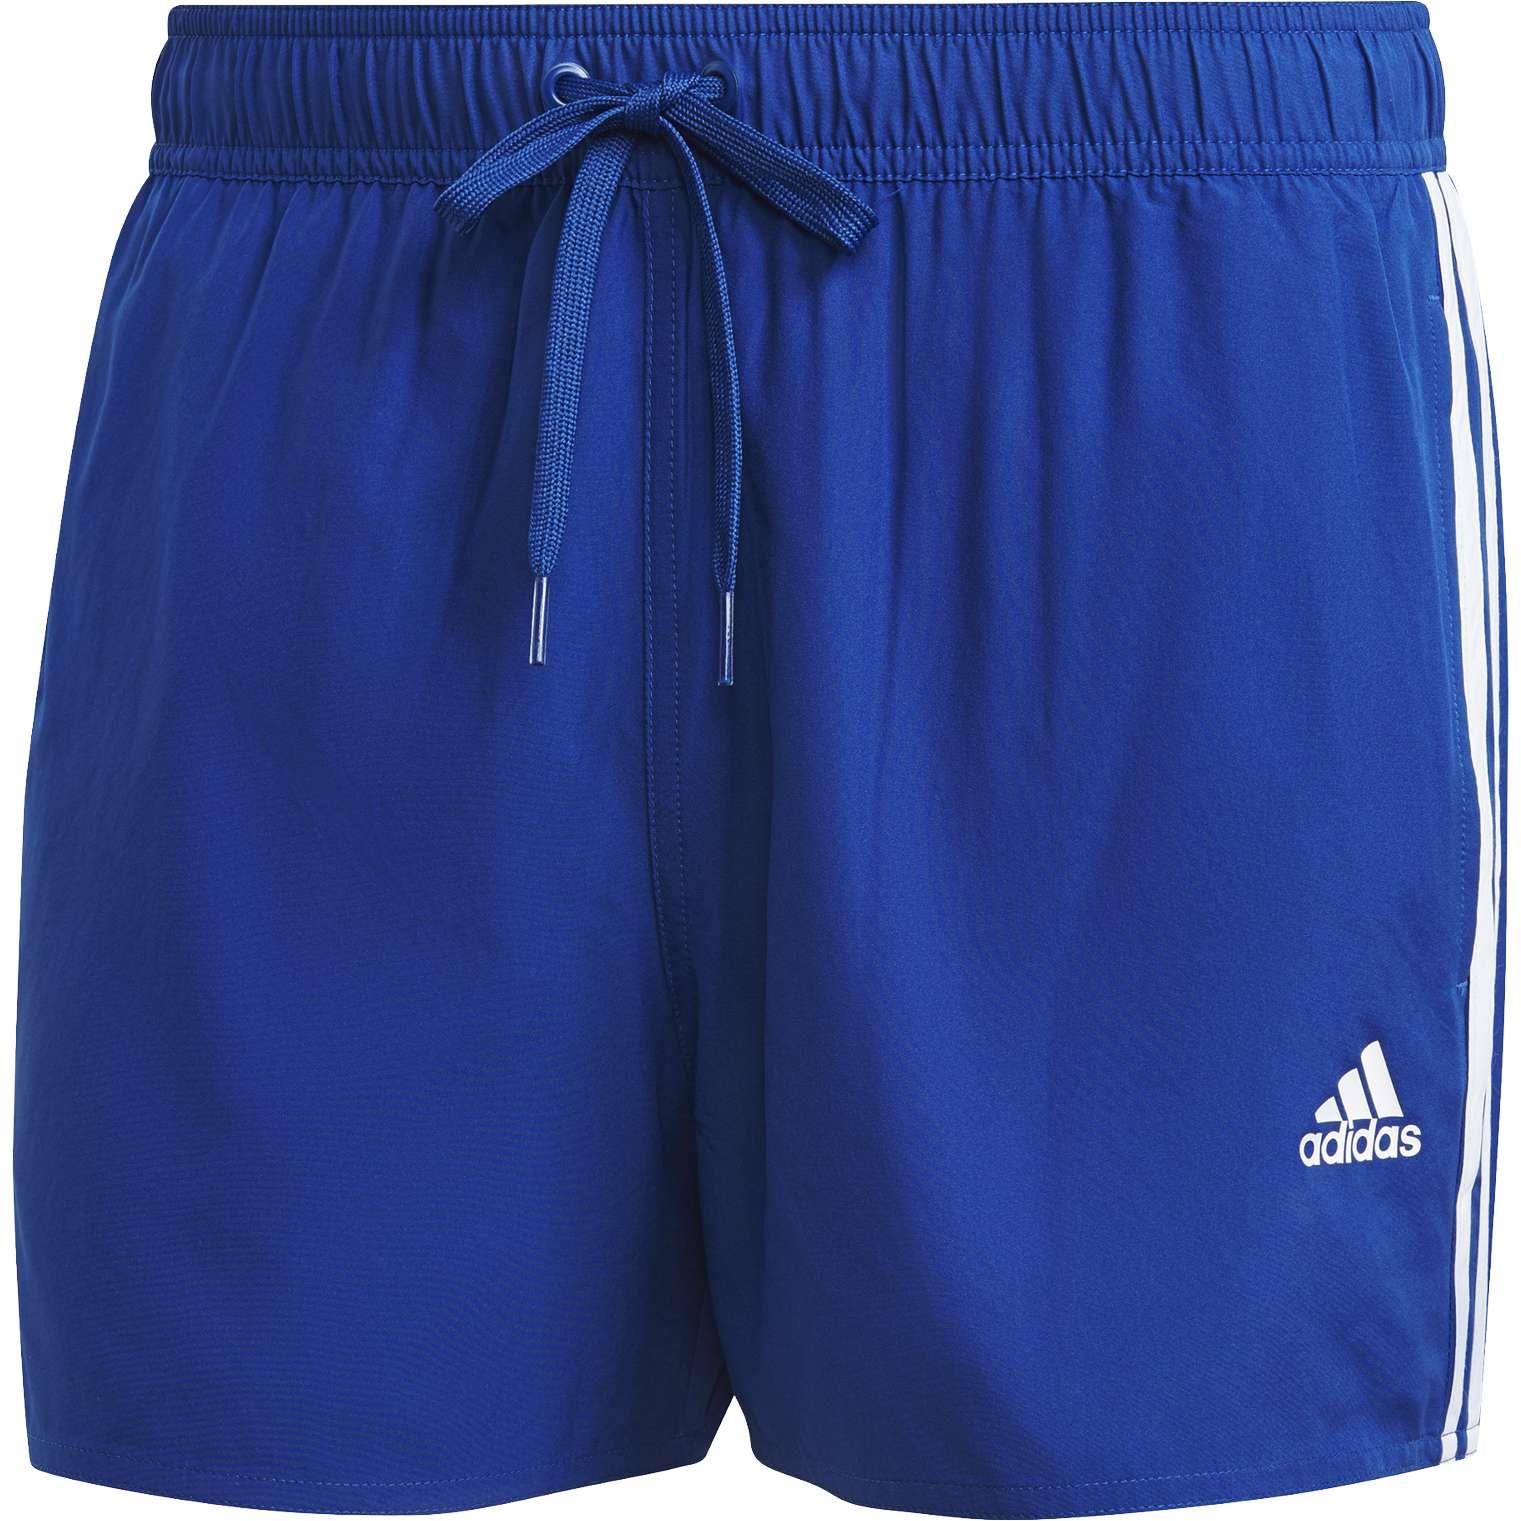 Door repetitie exotisch Adidas Classic 3-Stripes zwembroek heren royal blue